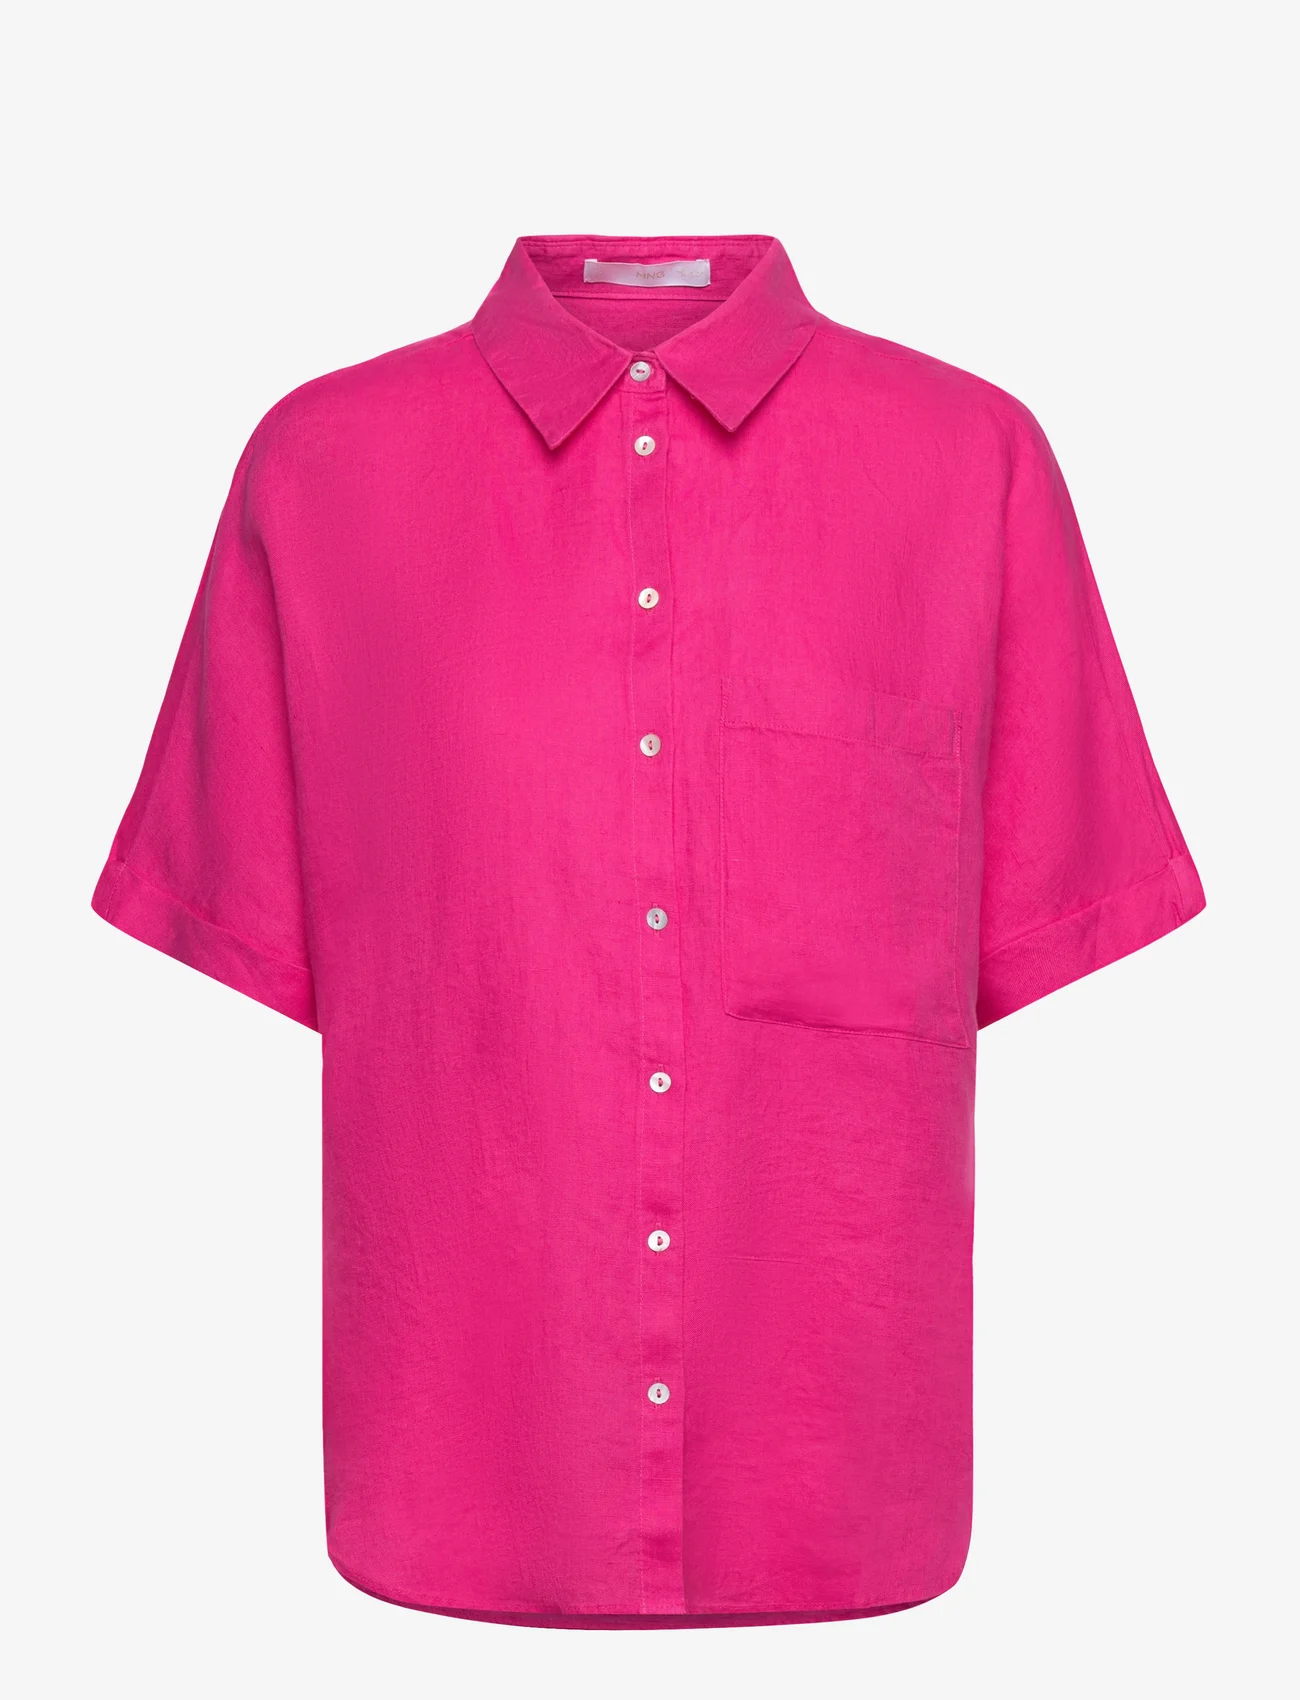 Mango - Pocket linen shirt - linskjorter - bright pink - 0